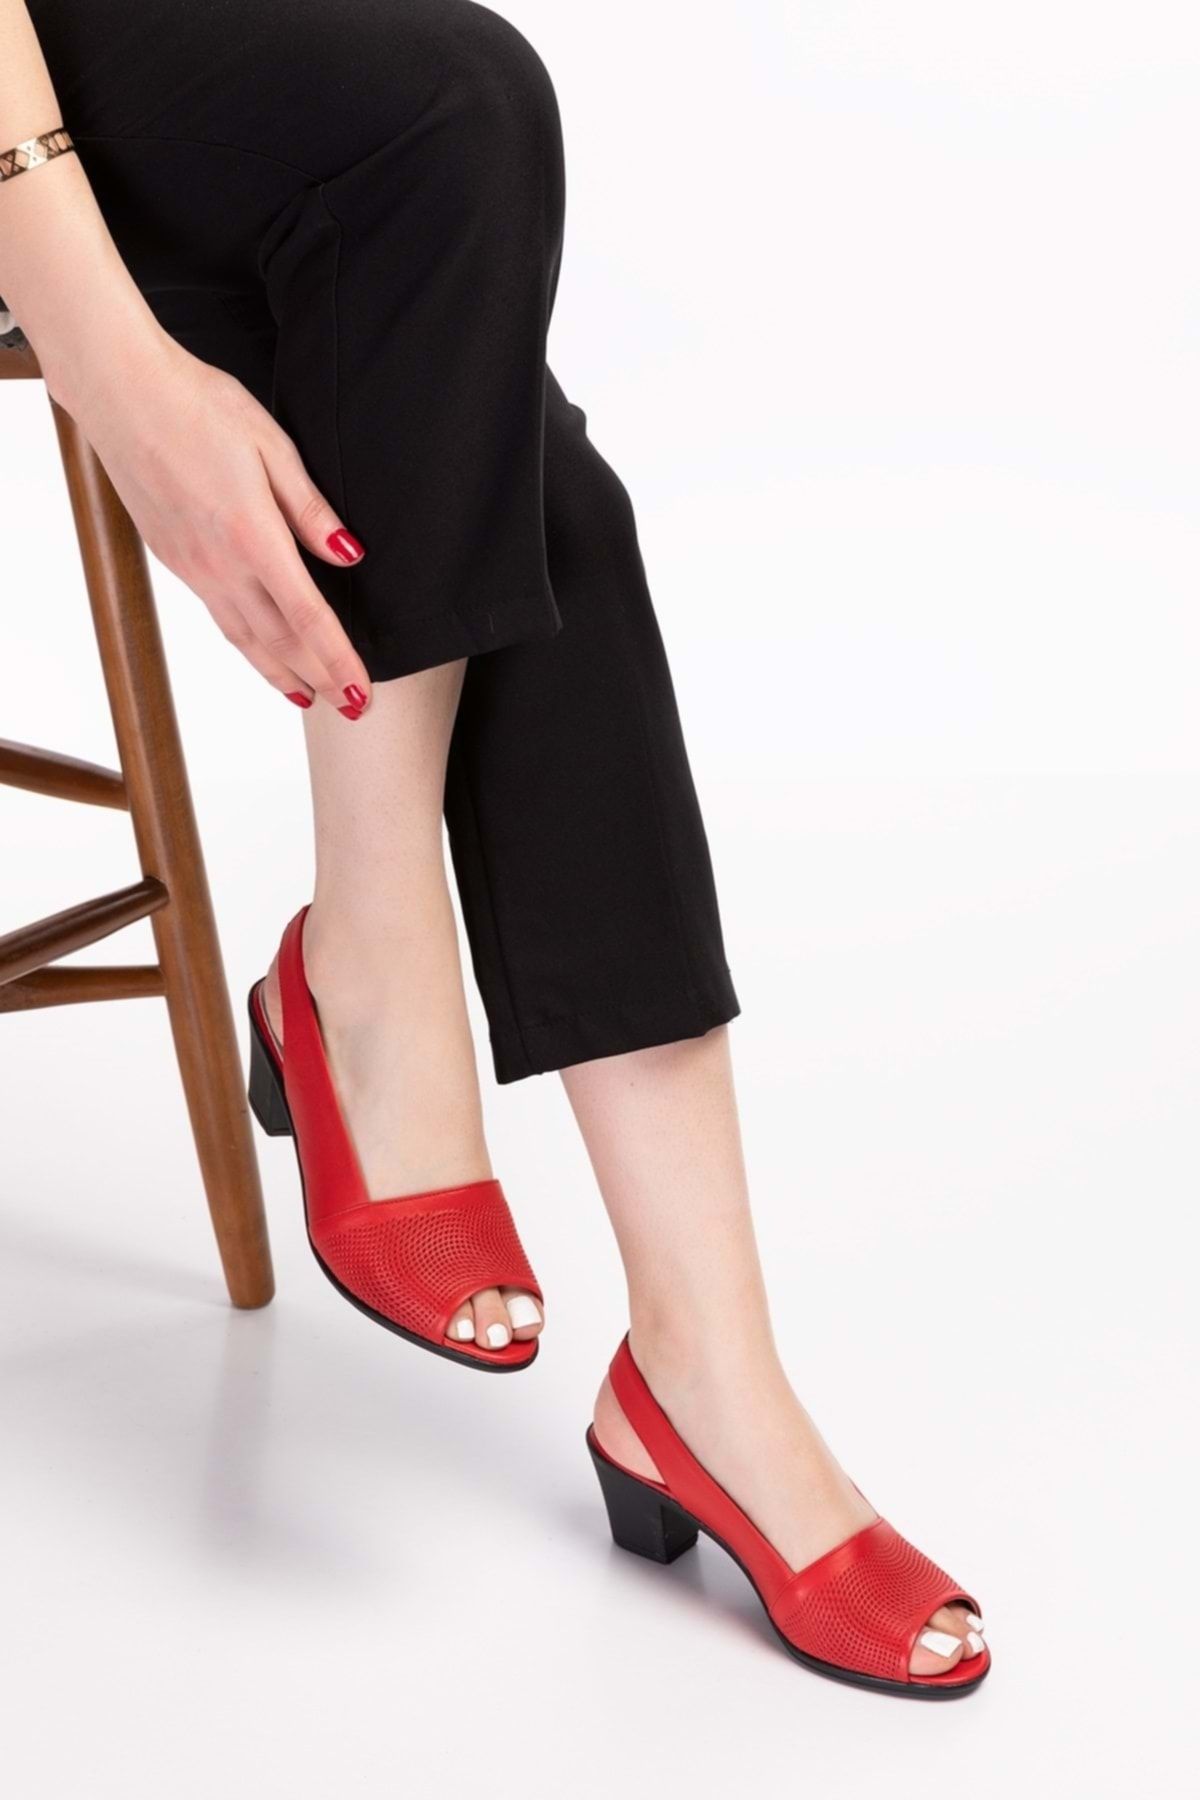 Gondol Kadın Hakiki Deri Klasik Topuklu Ayakkabı Vdt.262 - Kırmızı - 43